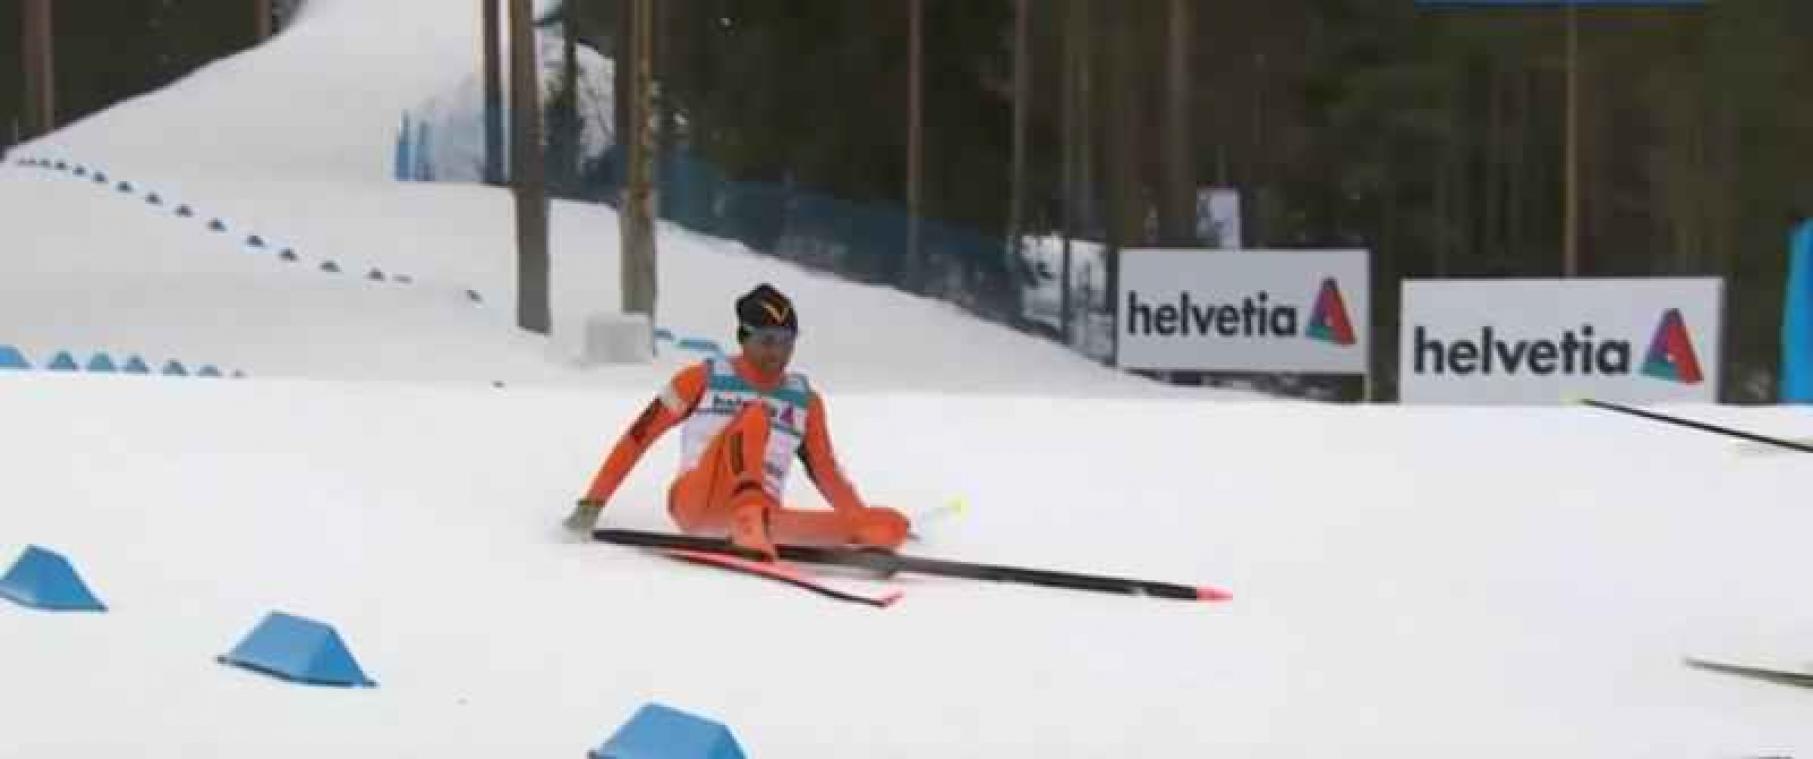 Venezolaan blundert op Fins skikampioenschap